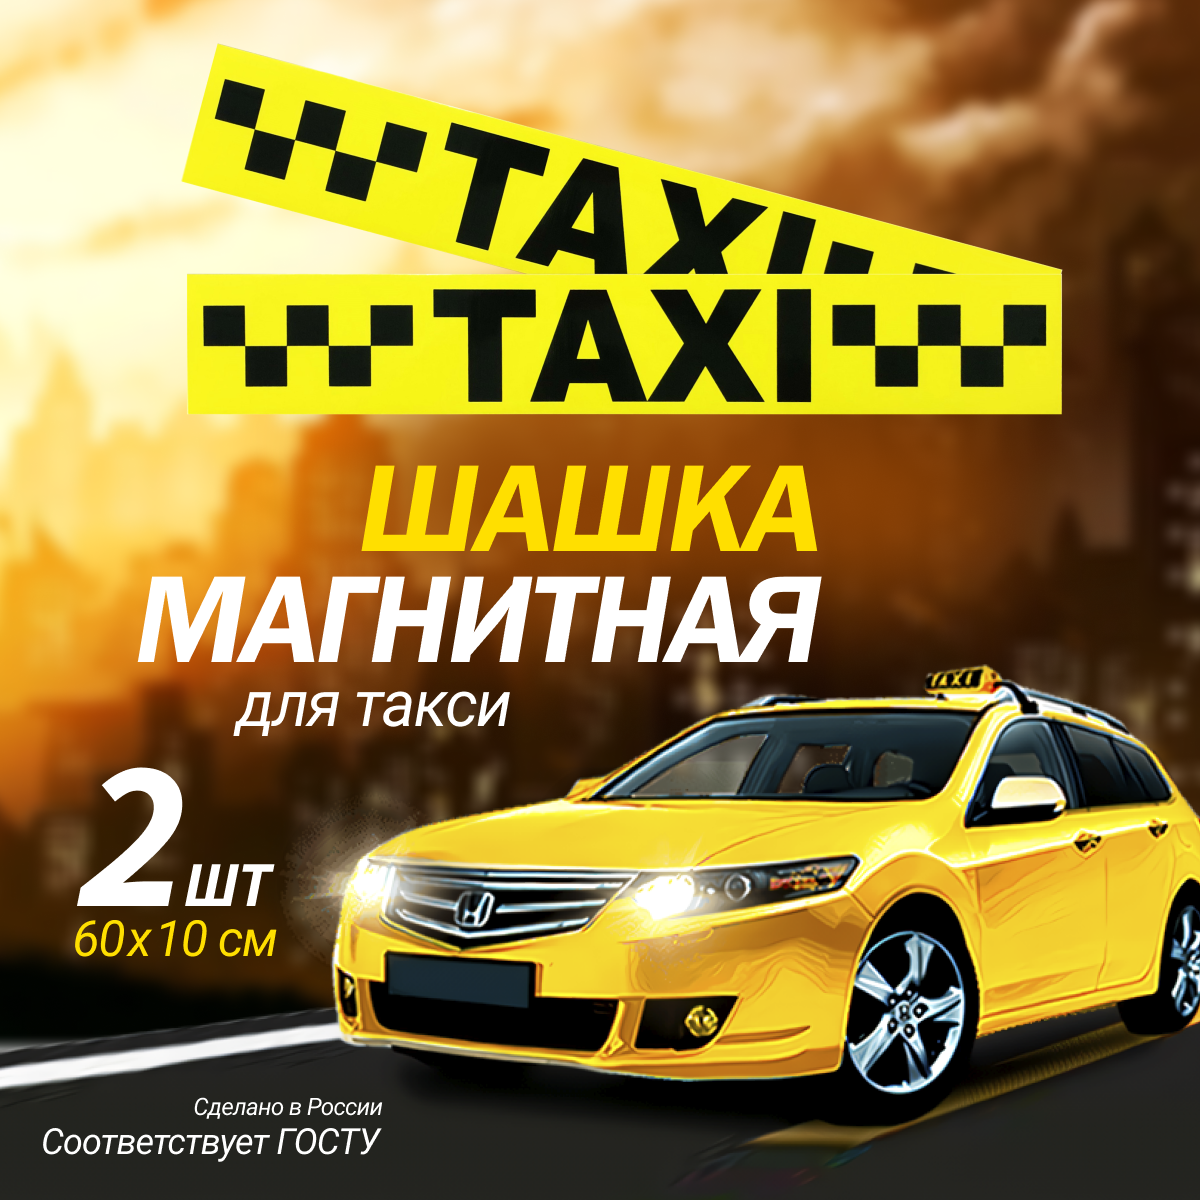 Магнитная наклейка (Молдинг 10х60см Такси) Шашки для такси на магнитном виниле упаковка 2шт.